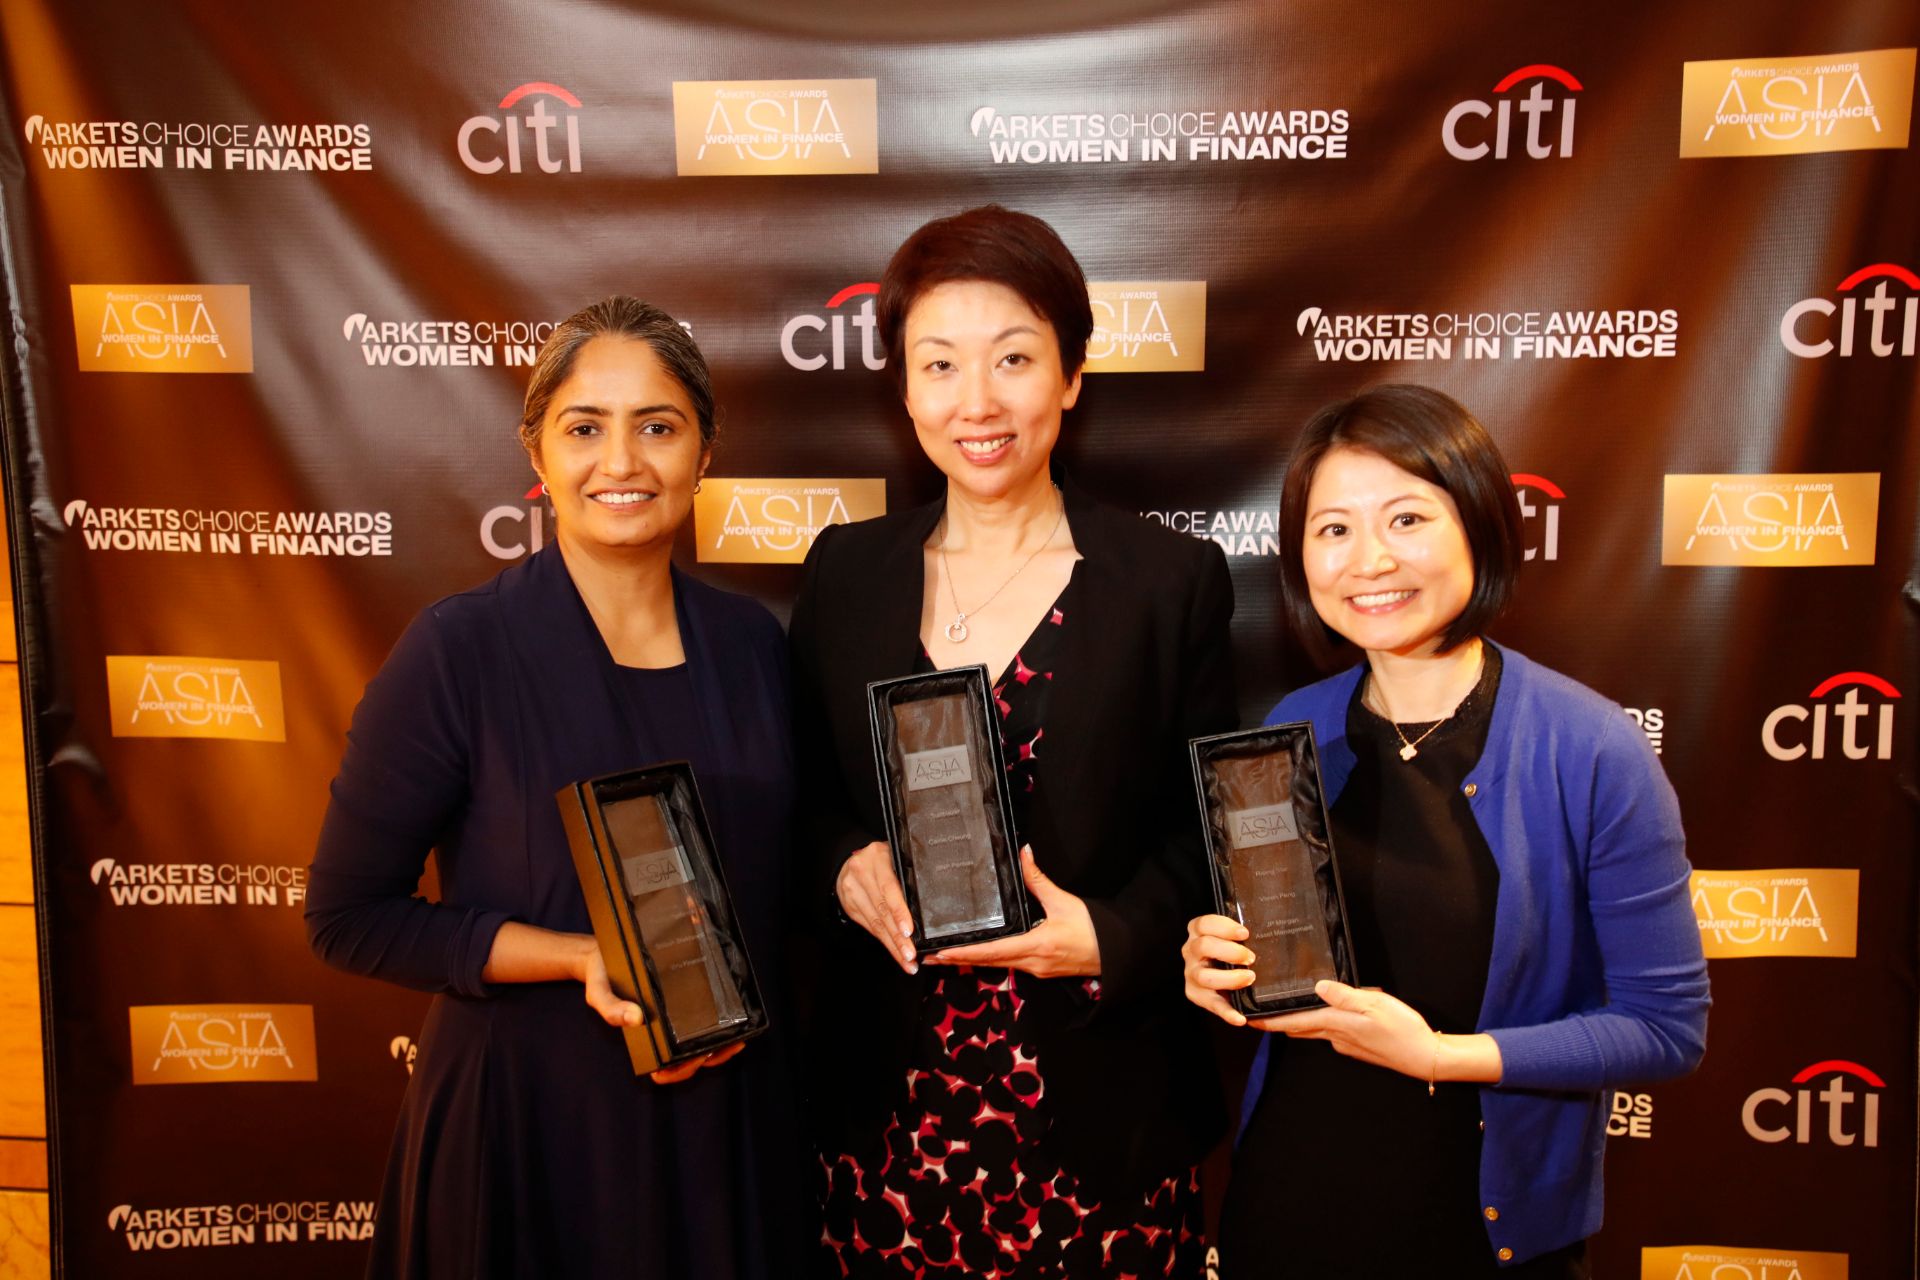 2019 Women in Finance Awards Asia Winners Announced